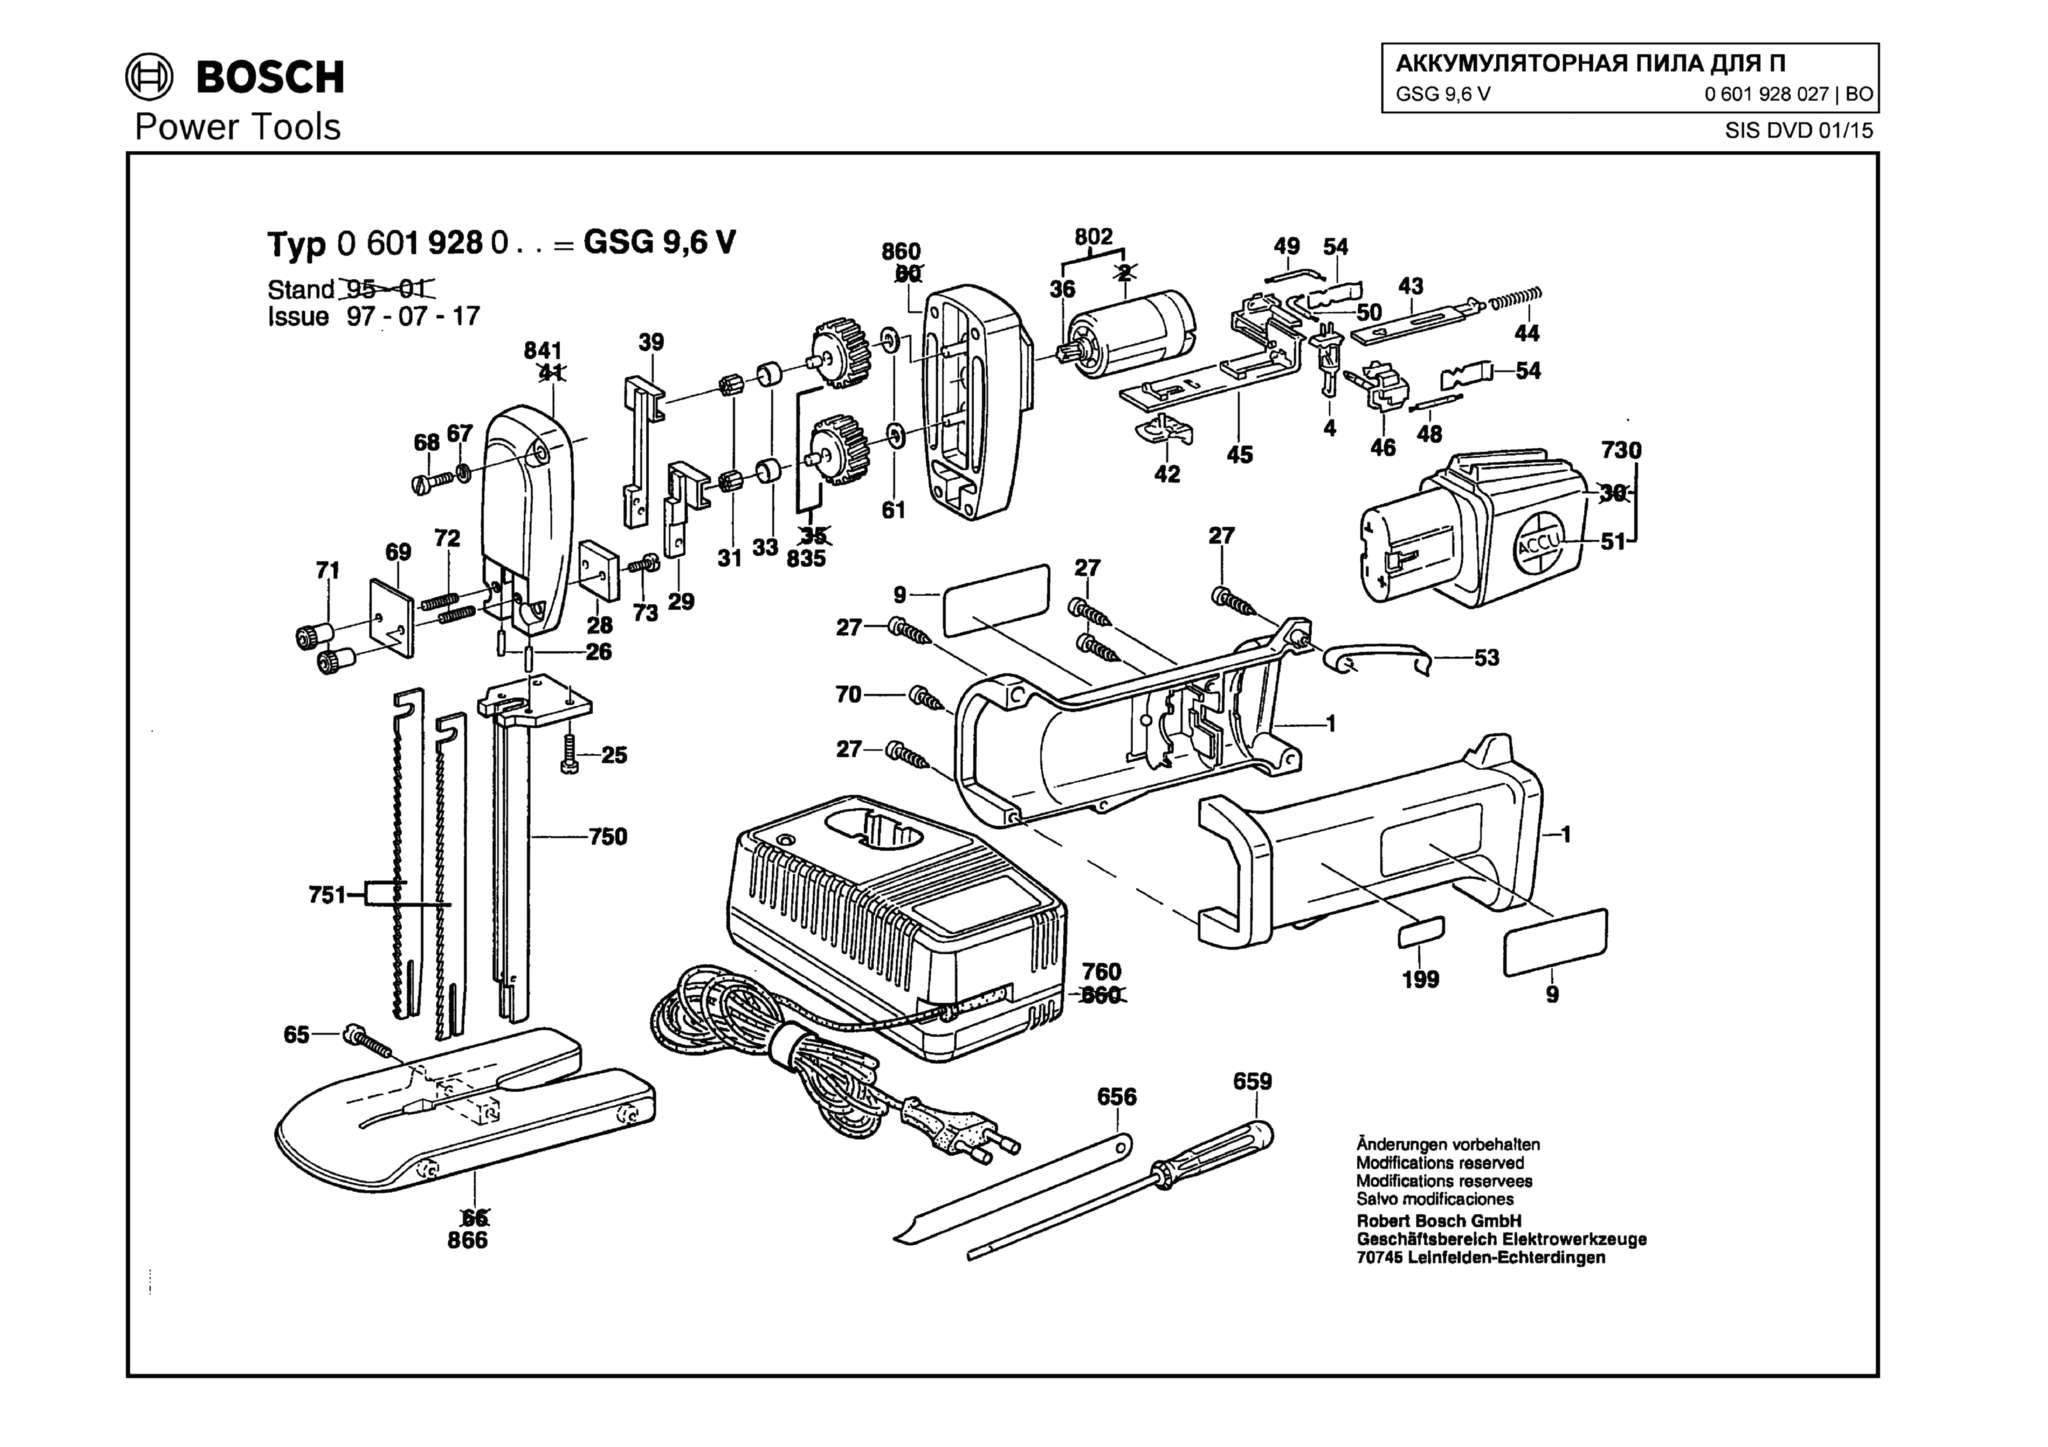 Запчасти, схема и деталировка Bosch GSG 9,6 V (ТИП 0601928027)